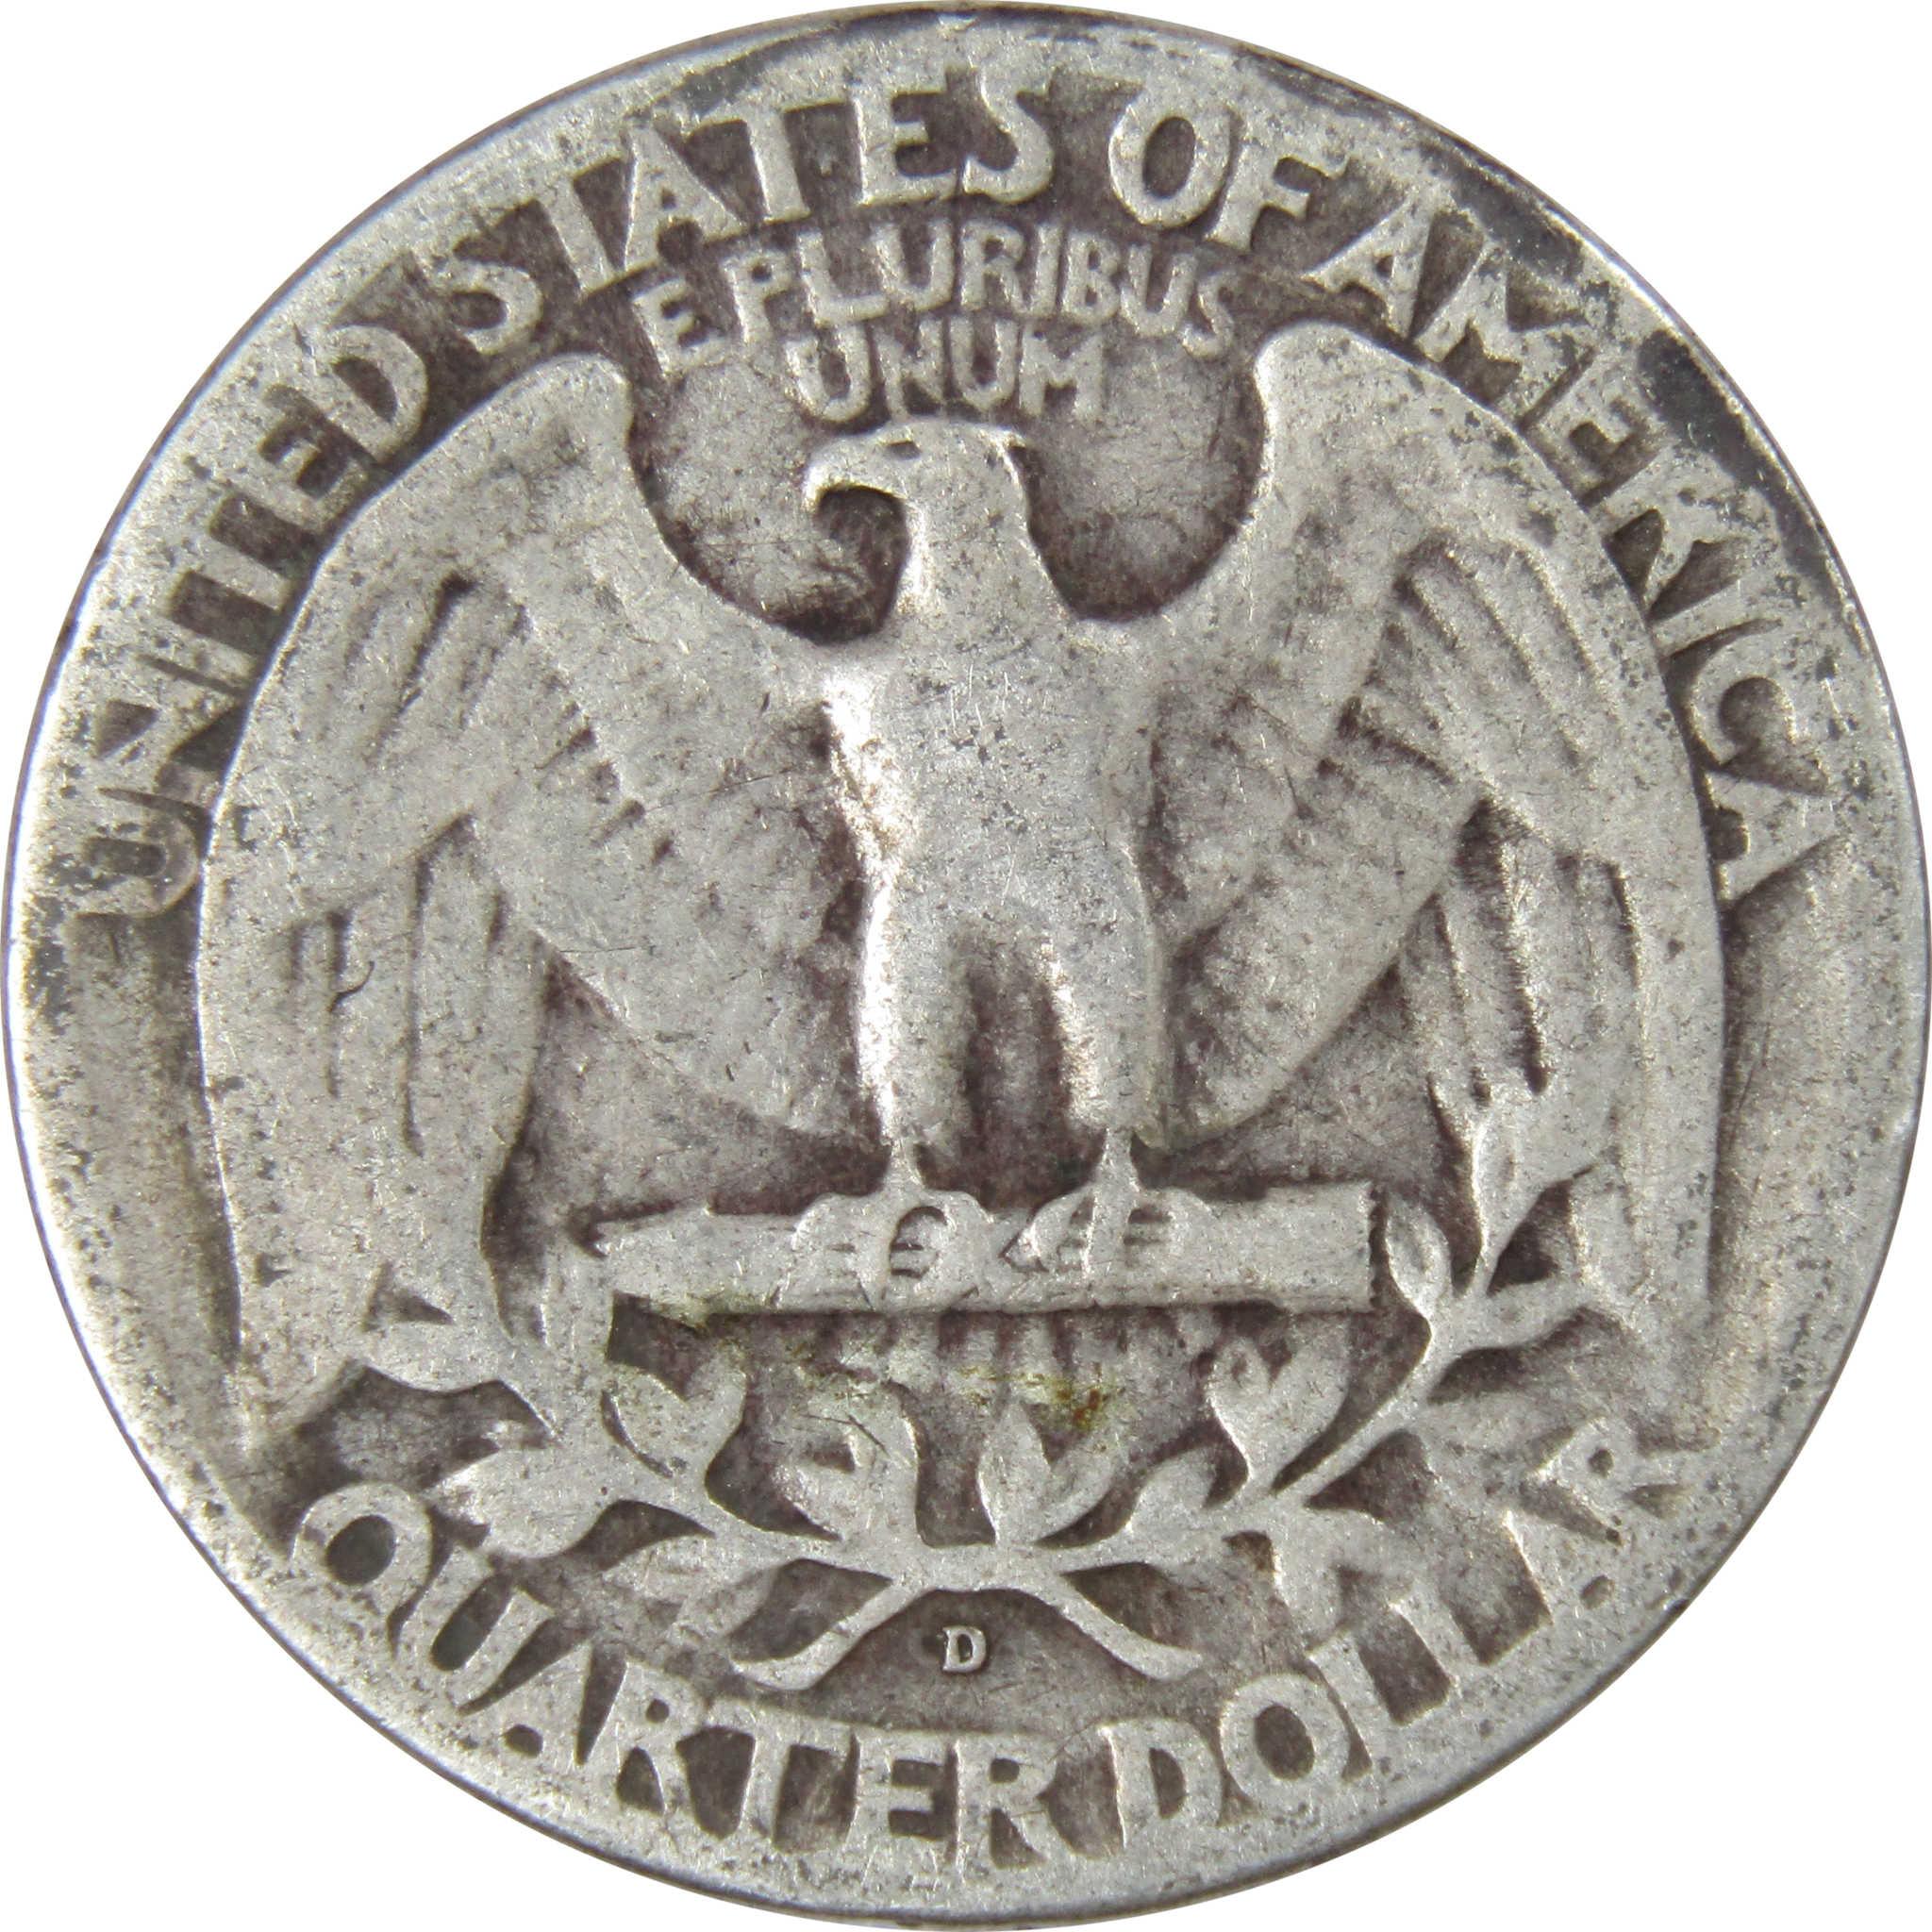 1942 D Washington Quarter VG Very Good 90% Silver 25c US Coin Collectible